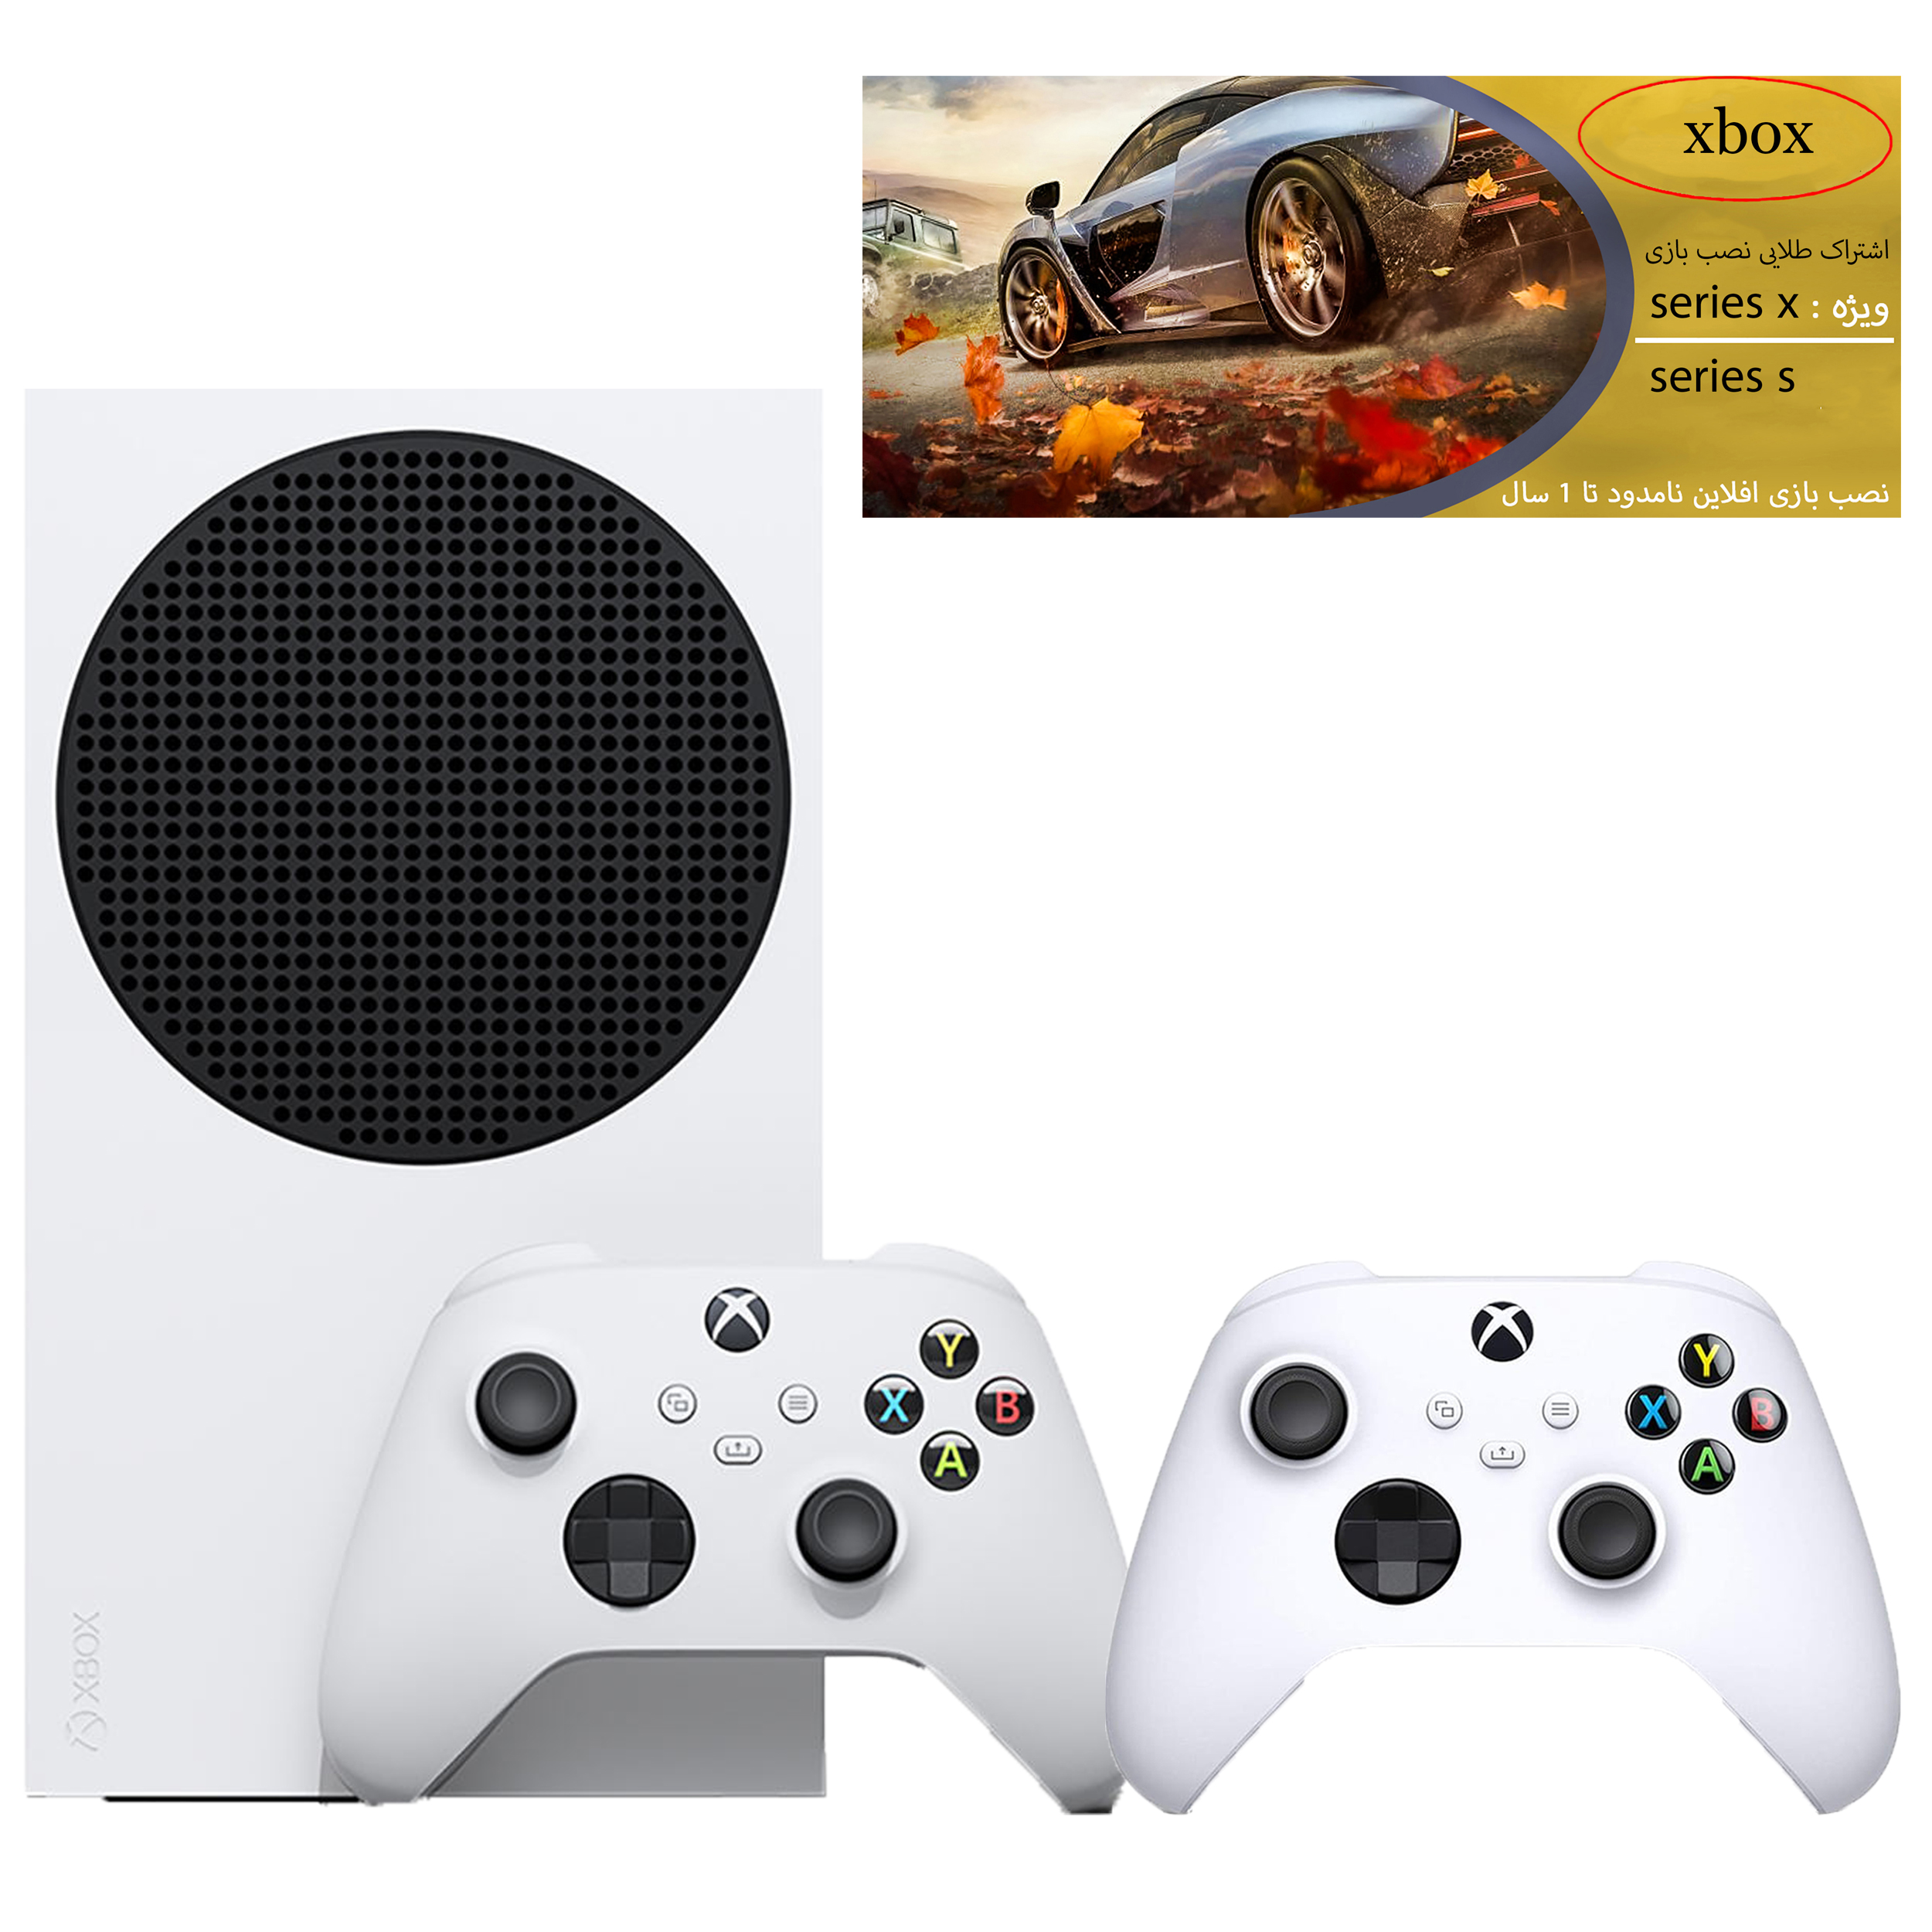 نکته خرید - قیمت روز مجموعه کنسول بازی مایکروسافت مدل Xbox Series S ظرفیت 512 گیگابایت به همراه دسته اضافی و کارت طلایی نصب بازی خرید